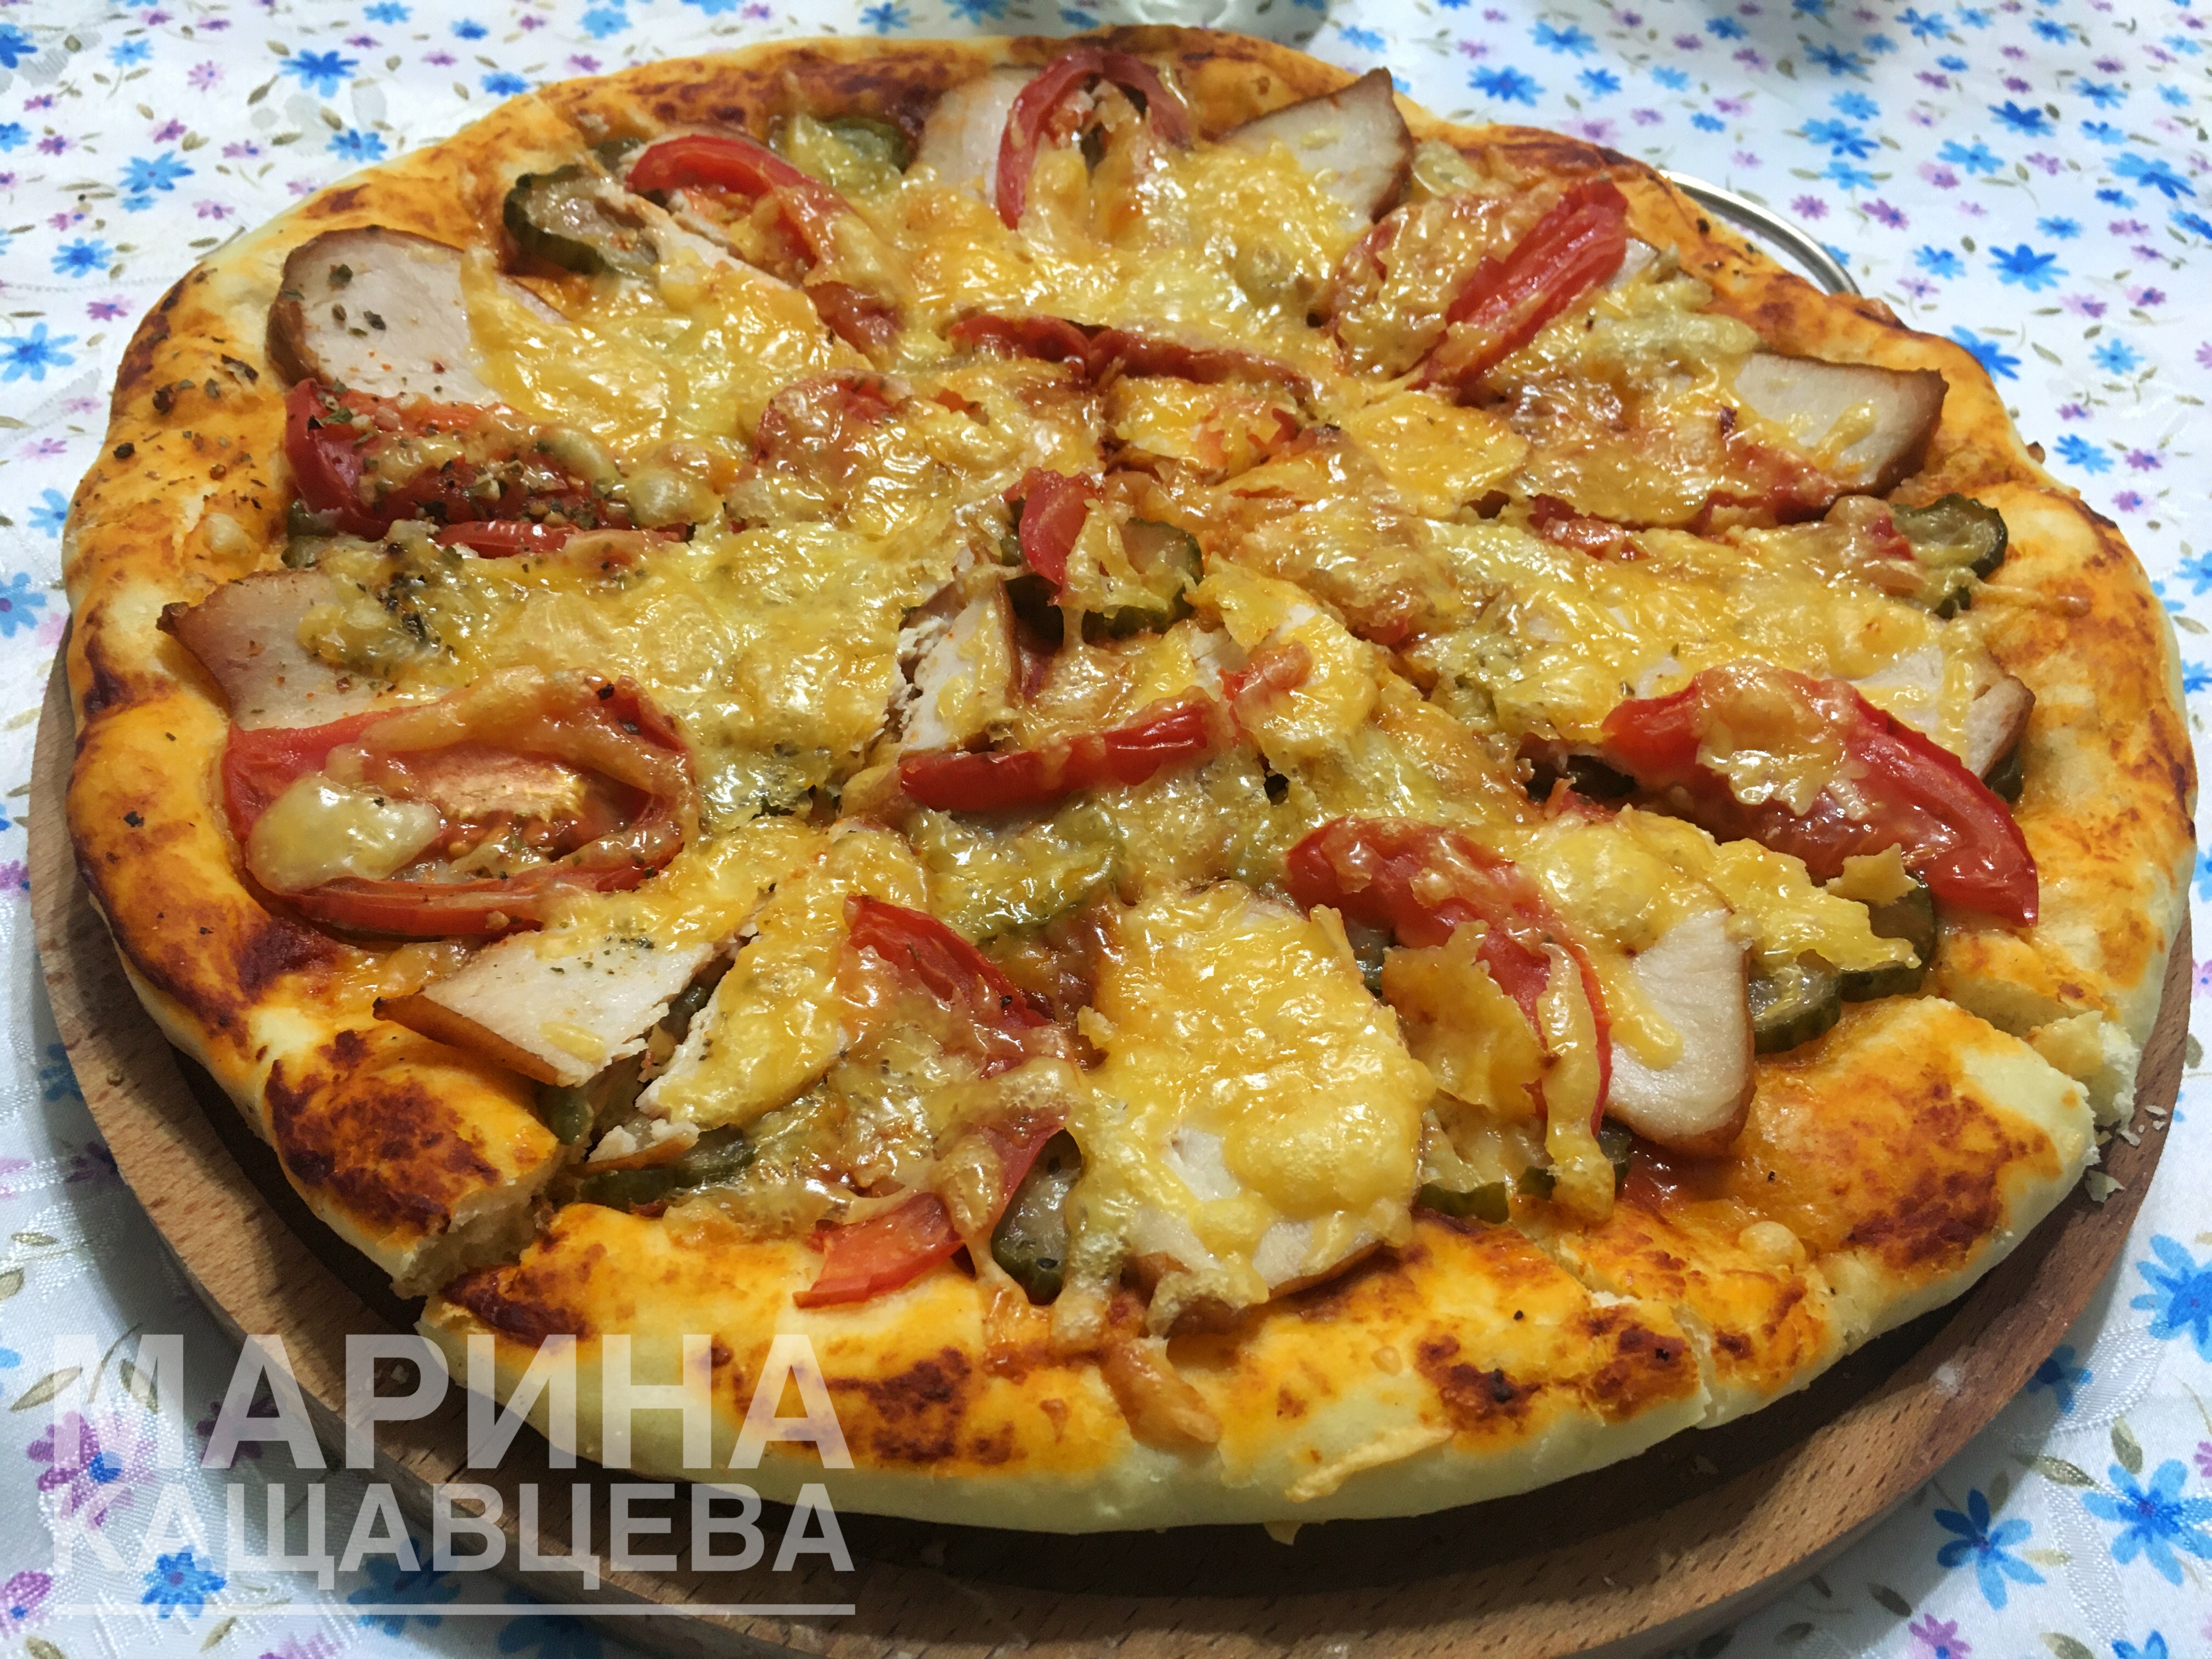 Пицца с копчёной курицей и маринованными огурцами 